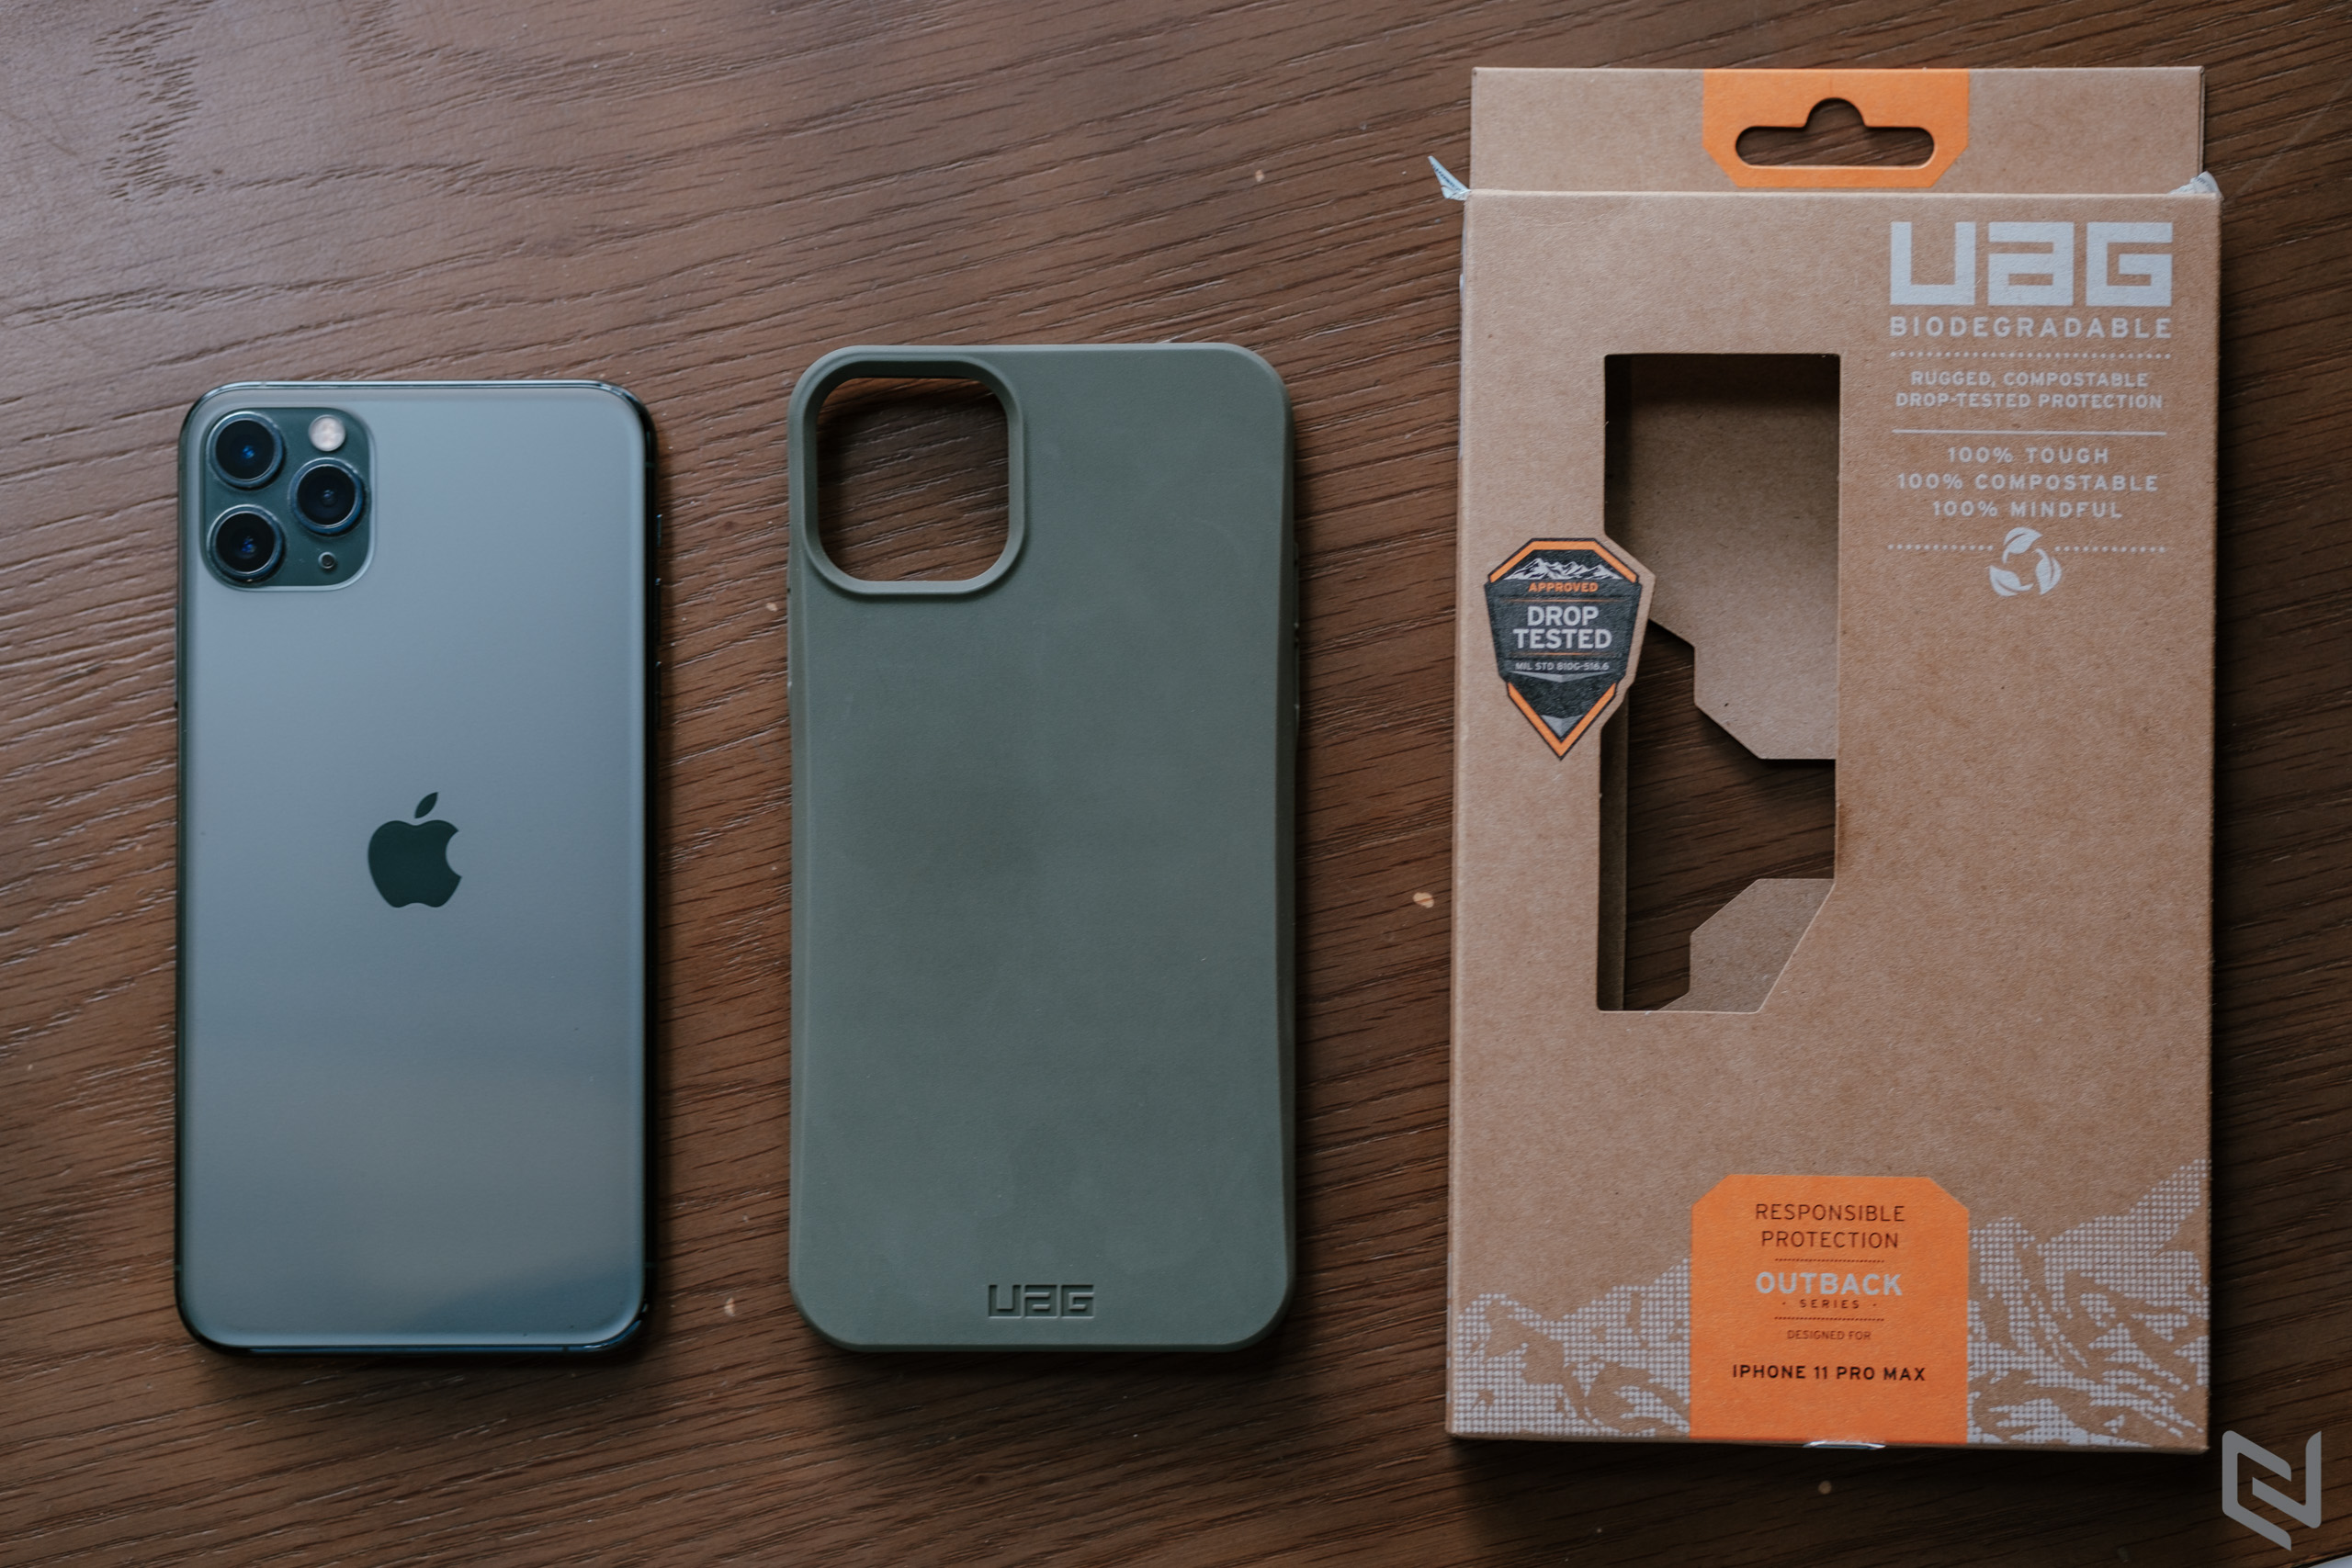 Trên tay UAG Outback Biodegradable cho iPhone, chiếc ốp lưng thân thiện môi trường 100%